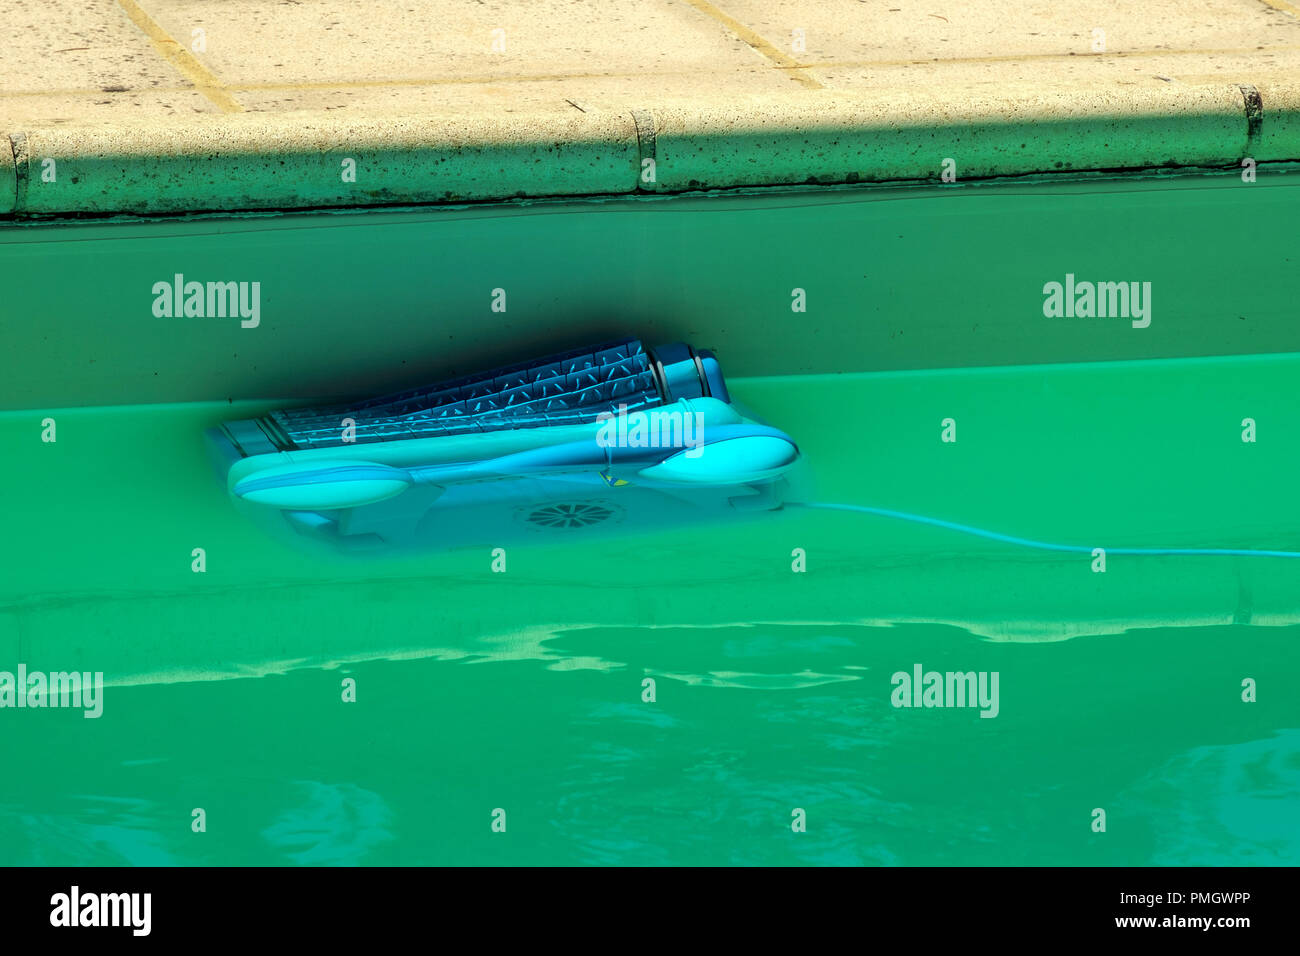 Un limpiafondos robot automático sube al lado de un nublado piscina la remoción de escombros y las algas Foto de stock